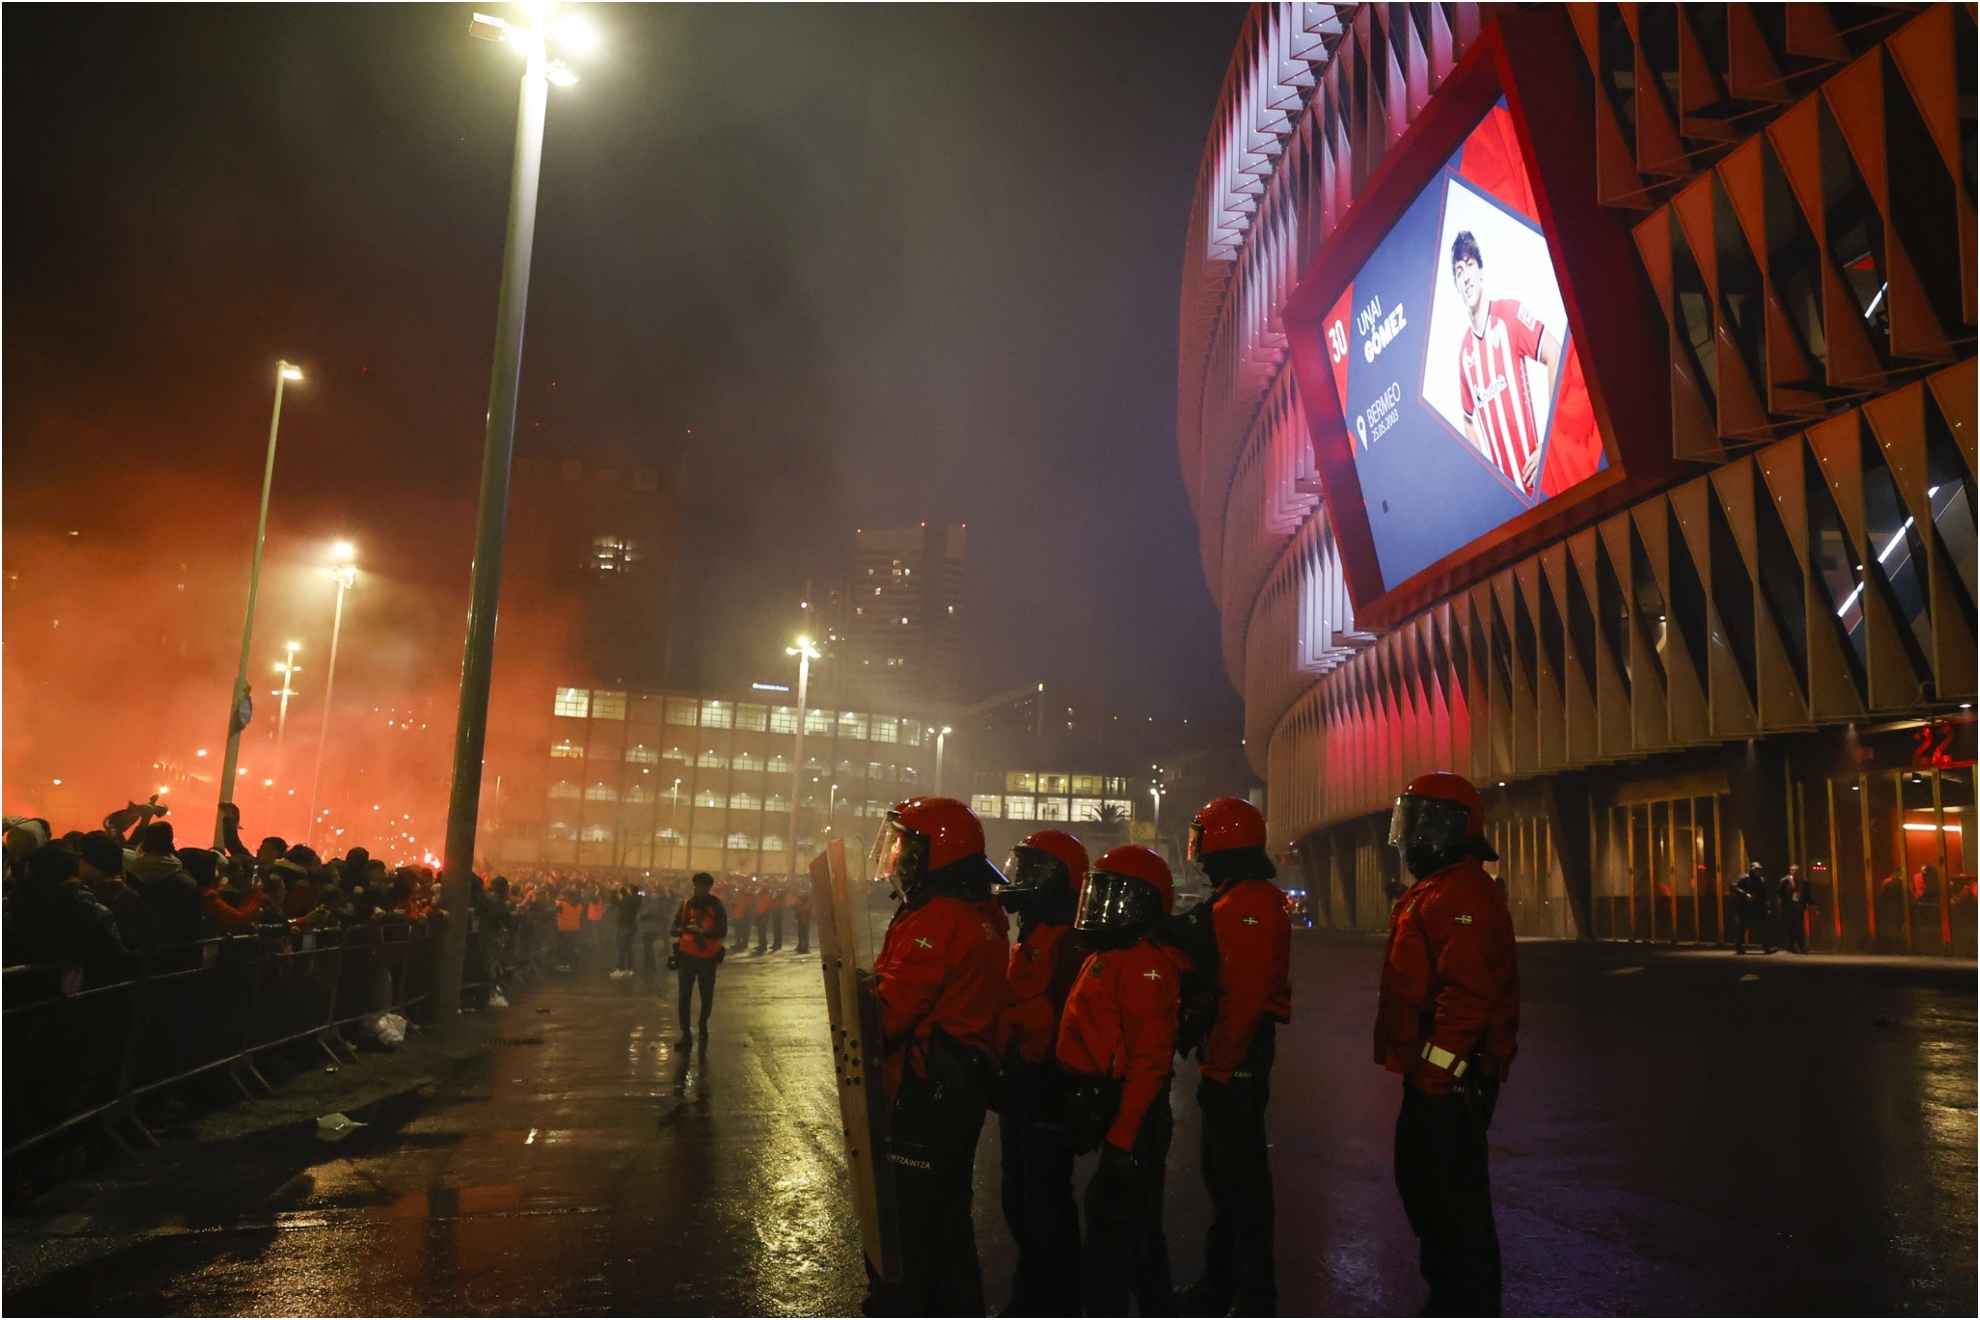 El Atlético de Madrid reacciona ante los graves incidentes: Denunciamos el deficiente operativo